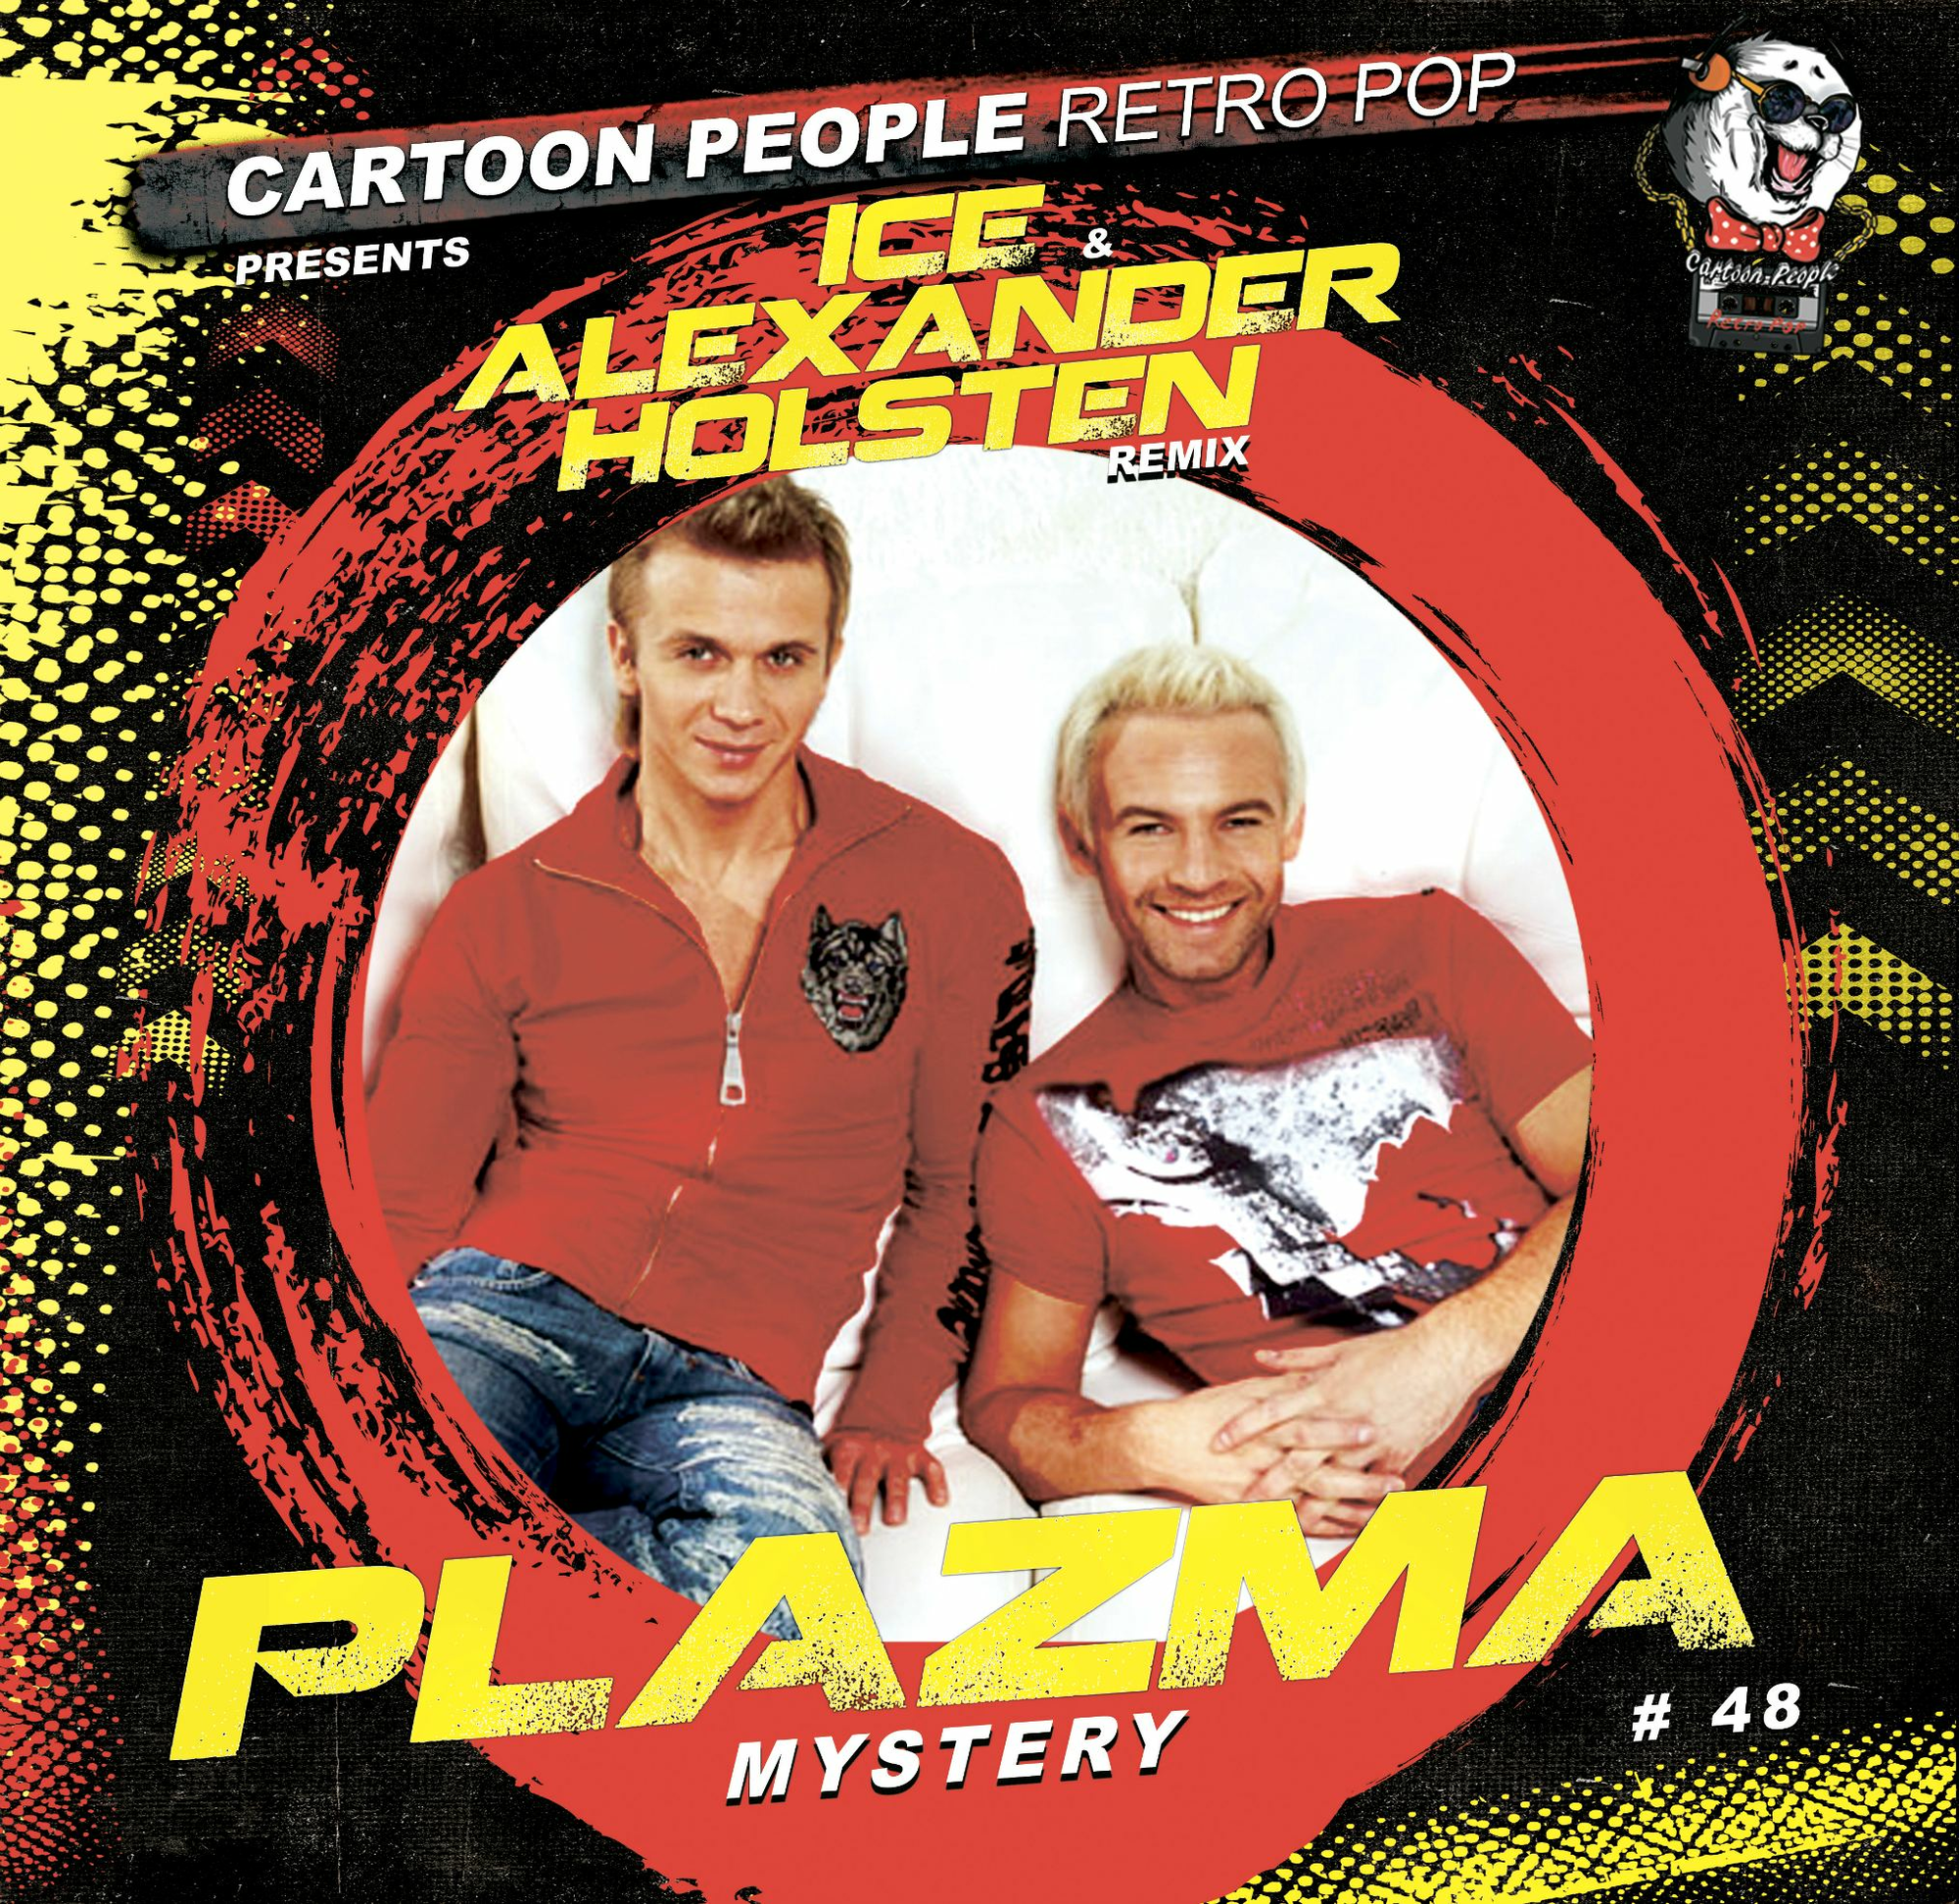 Слушать группу плазма лучшие песни. Группа Plazma. Plazma обложка. Группа плазма альбомы. Plazma Mystery.